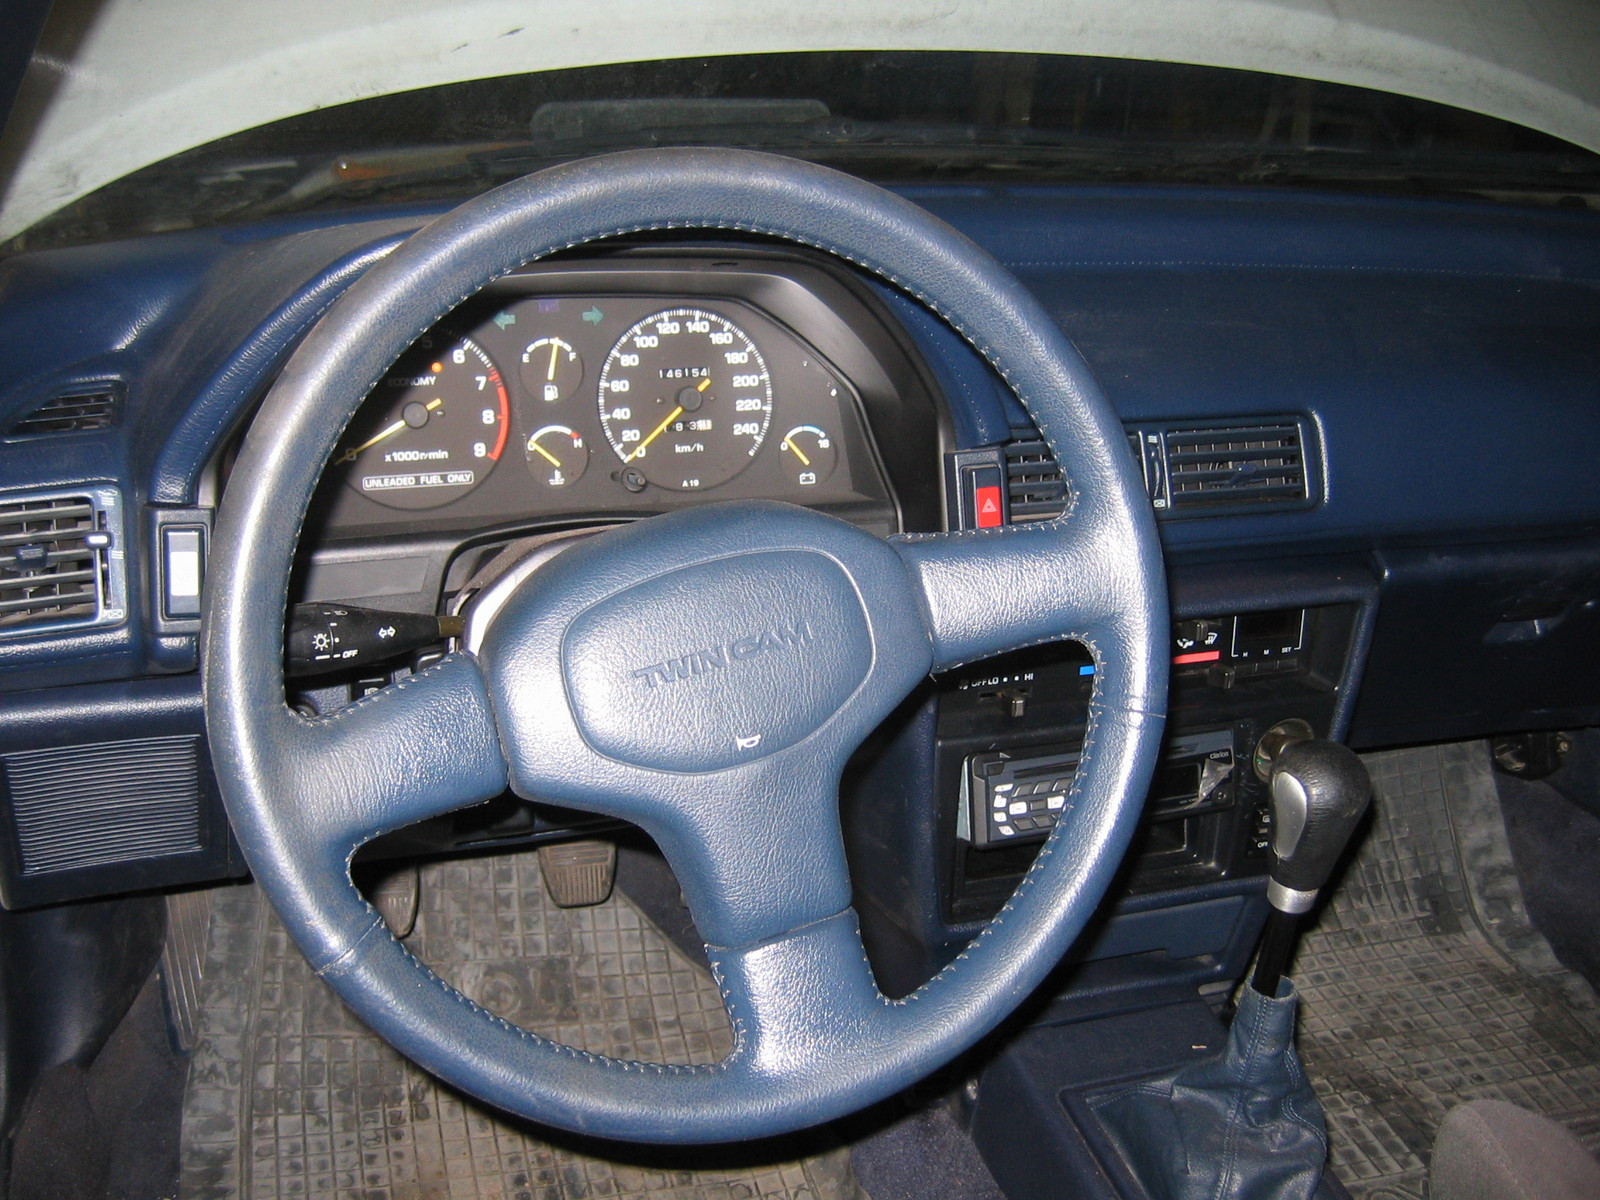 Toyota Celica ST-162